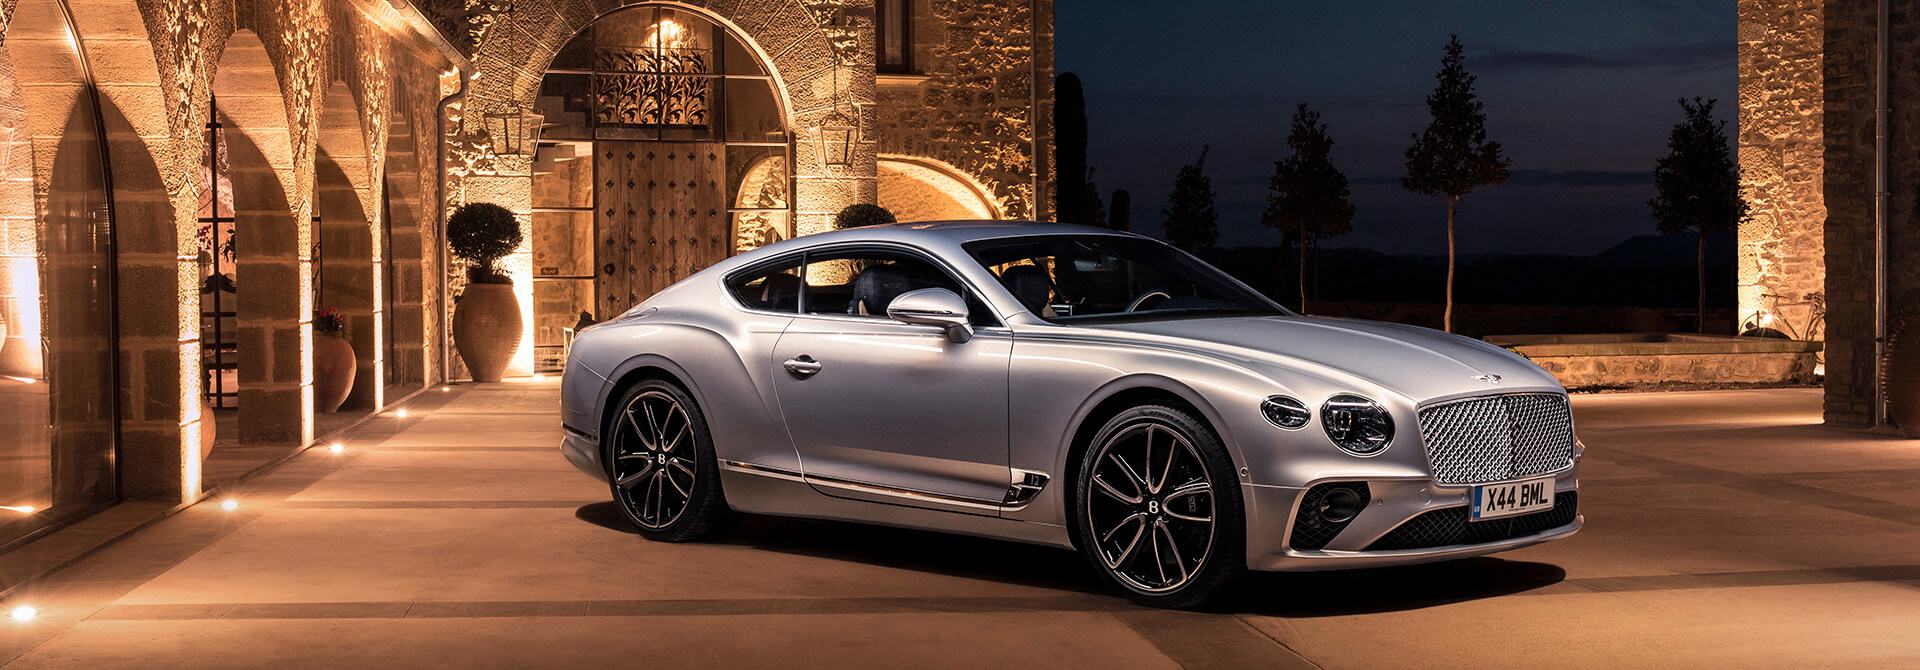 Bentley-Continental-GT-2020-muaxegiatot-vn